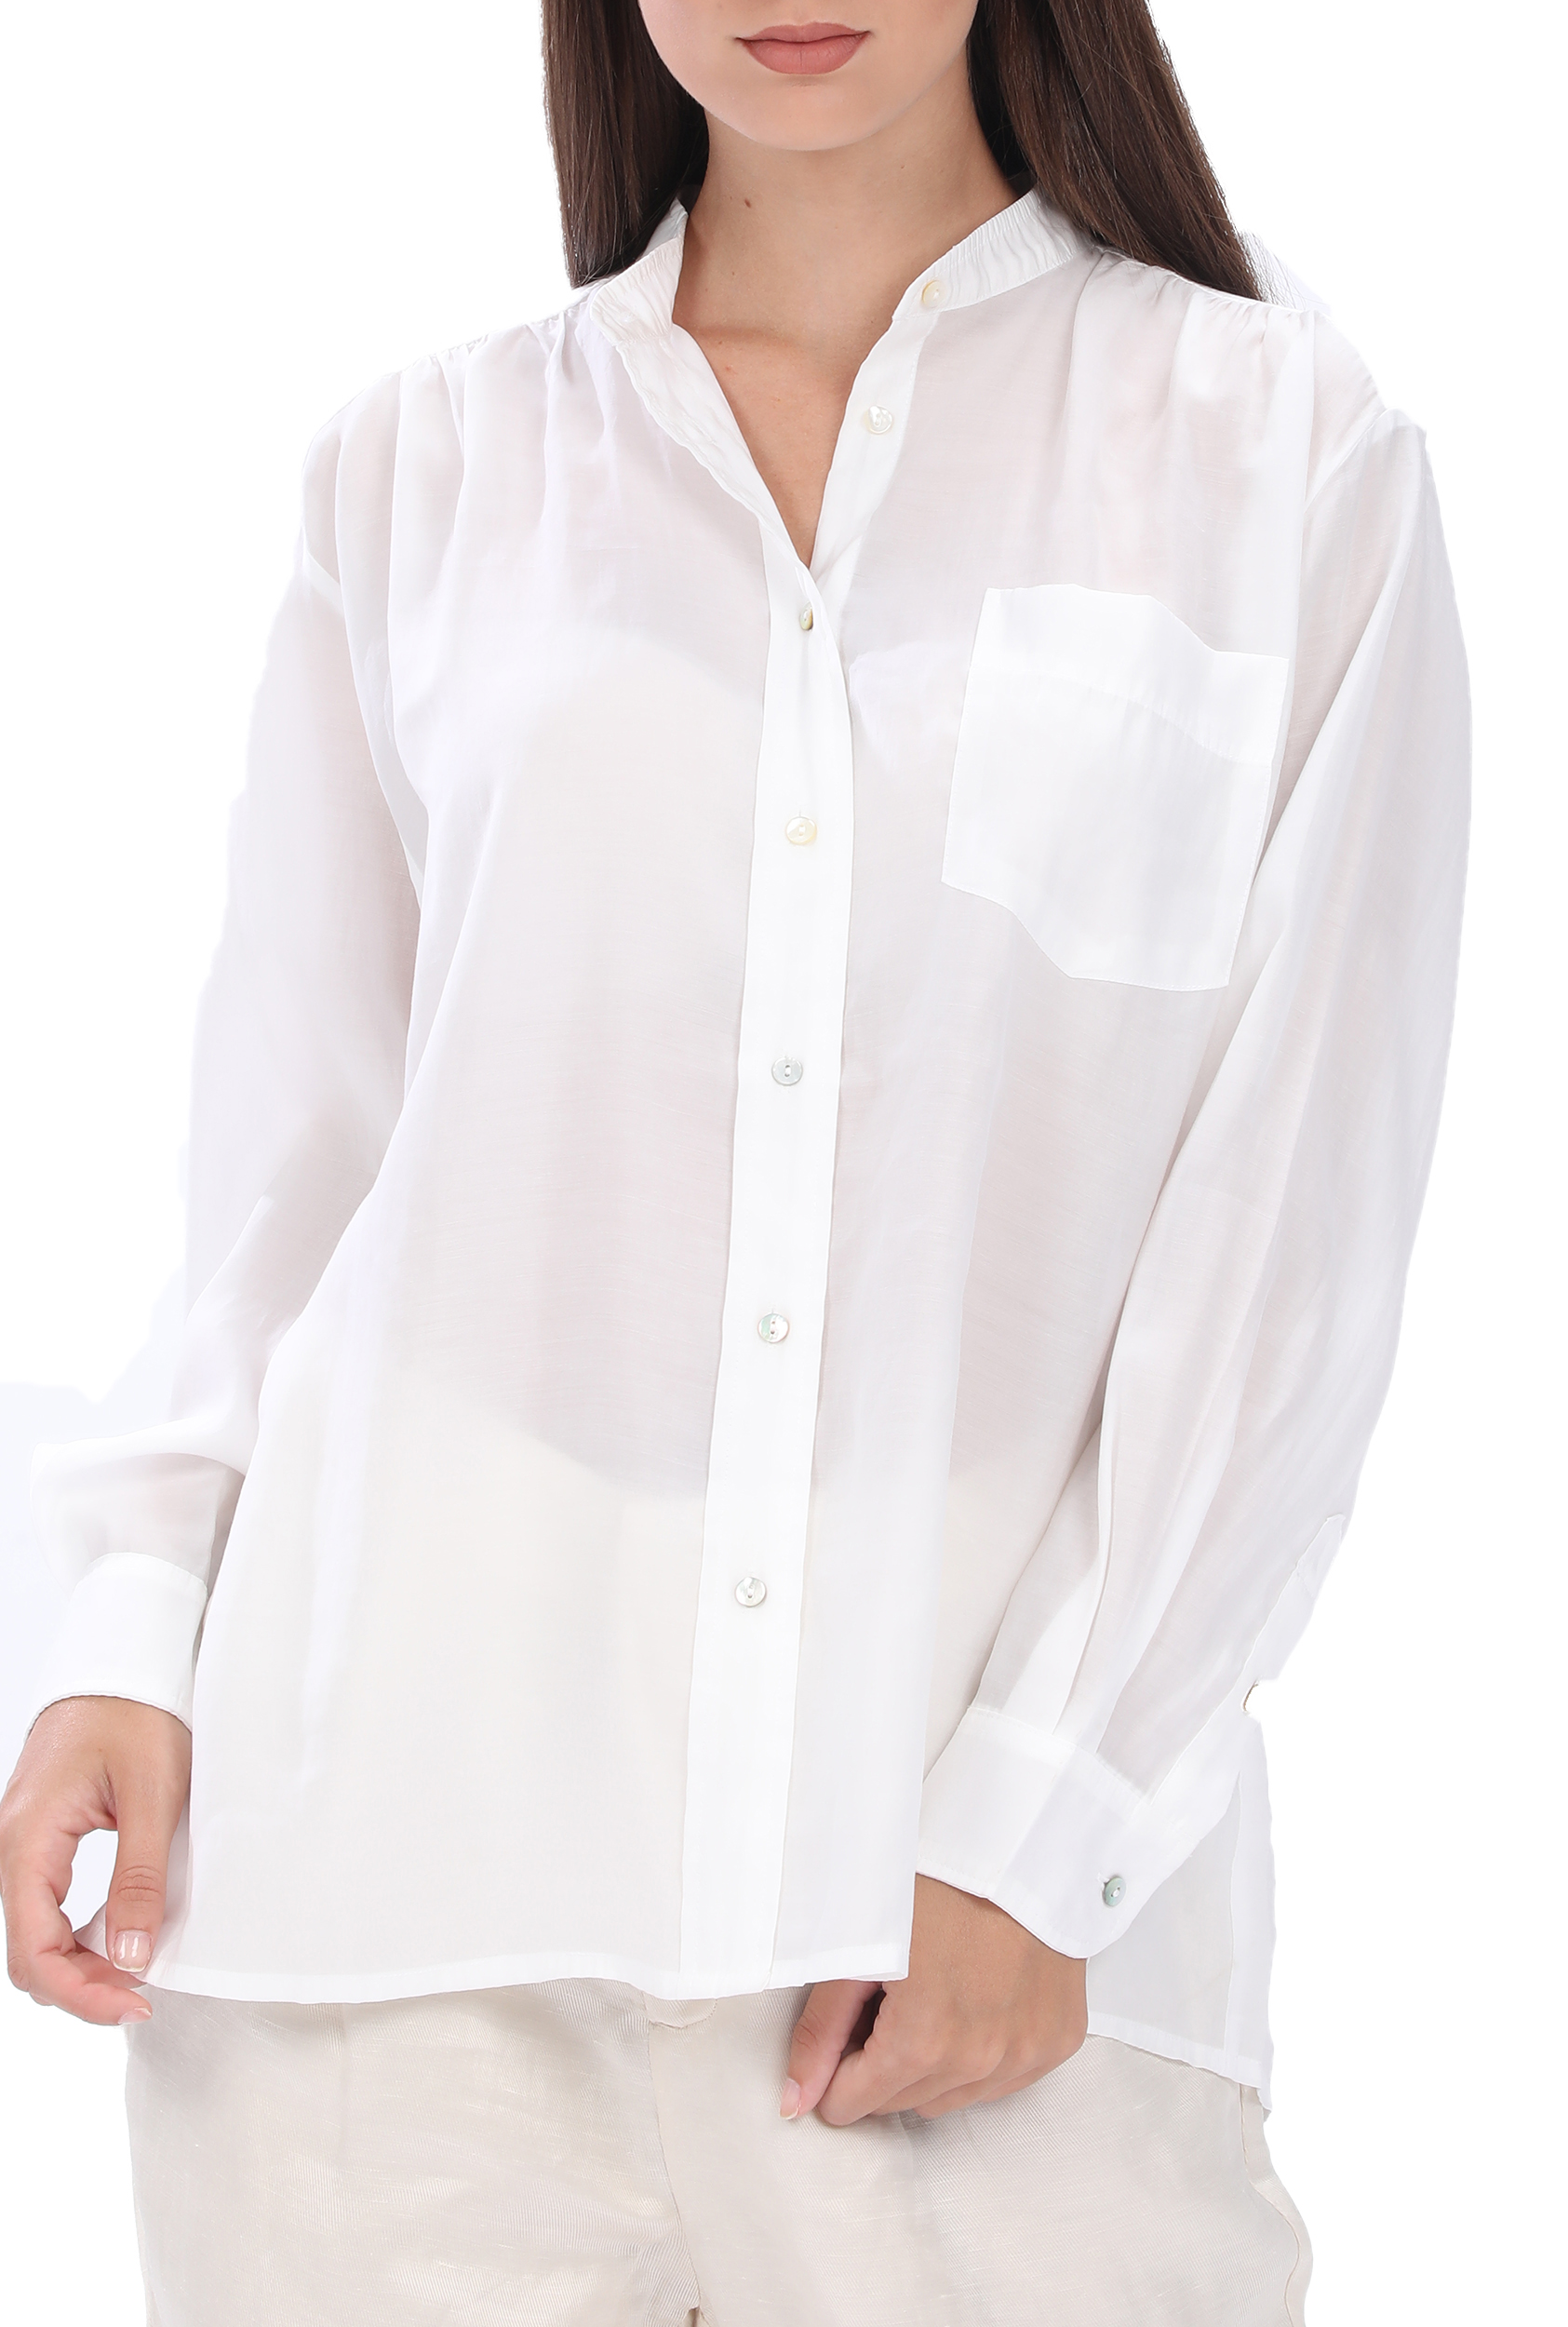 Γυναικεία/Ρούχα/Πουκάμισα/Μακρυμάνικα MOLLY BRACKEN - Γυναικείο πουκάμισο MOLLY BRACKEN λευκό